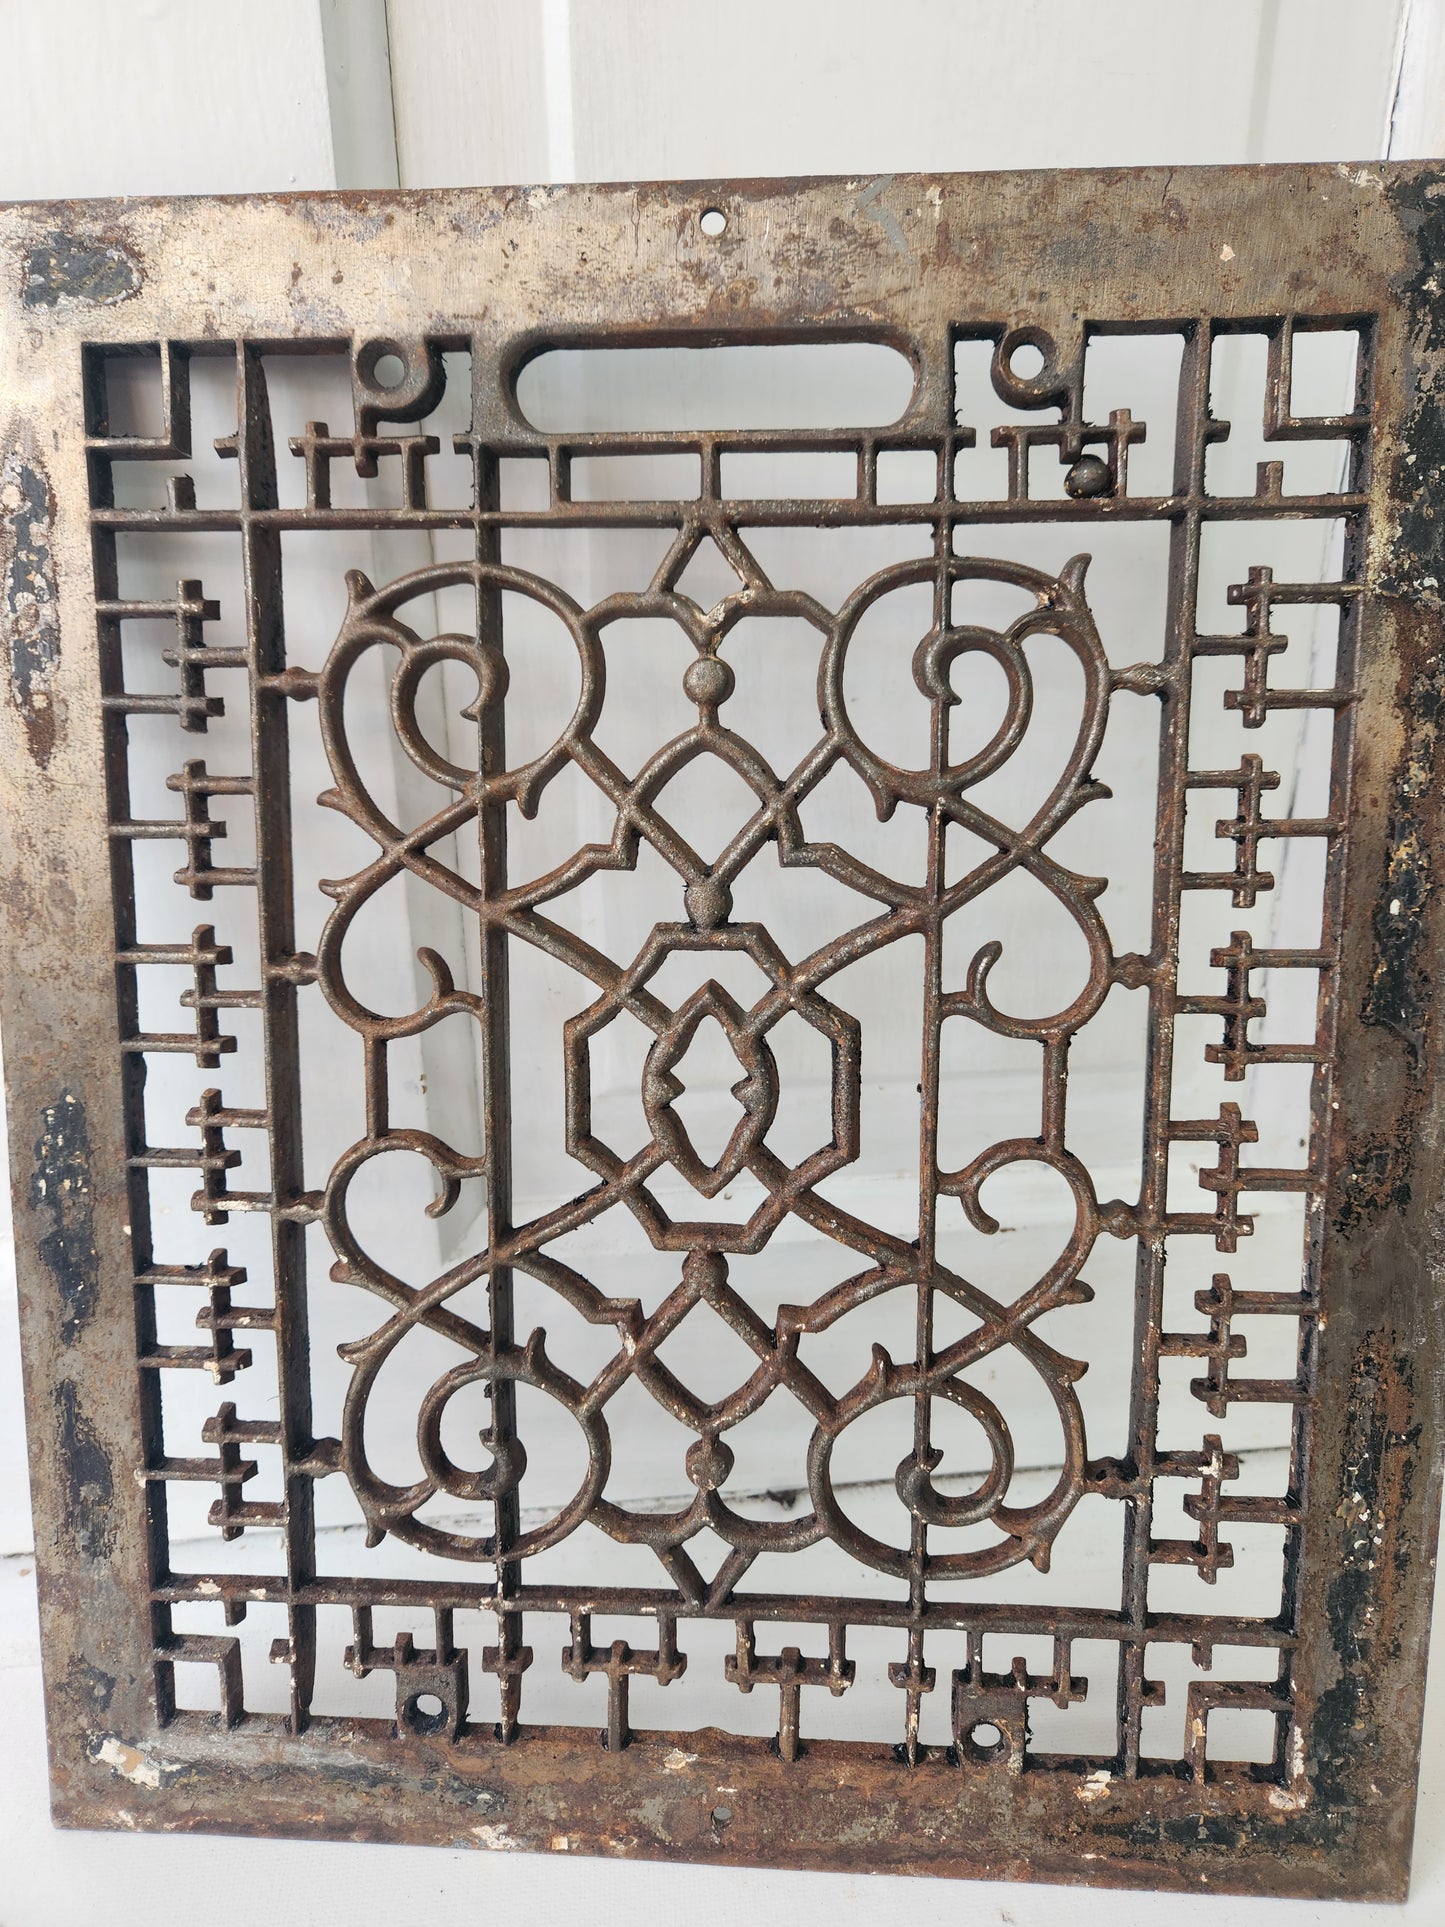 12 x 14 Antique Ornate Cast Iron Floor Vent Cover, Black Iron Floor Grate #040403